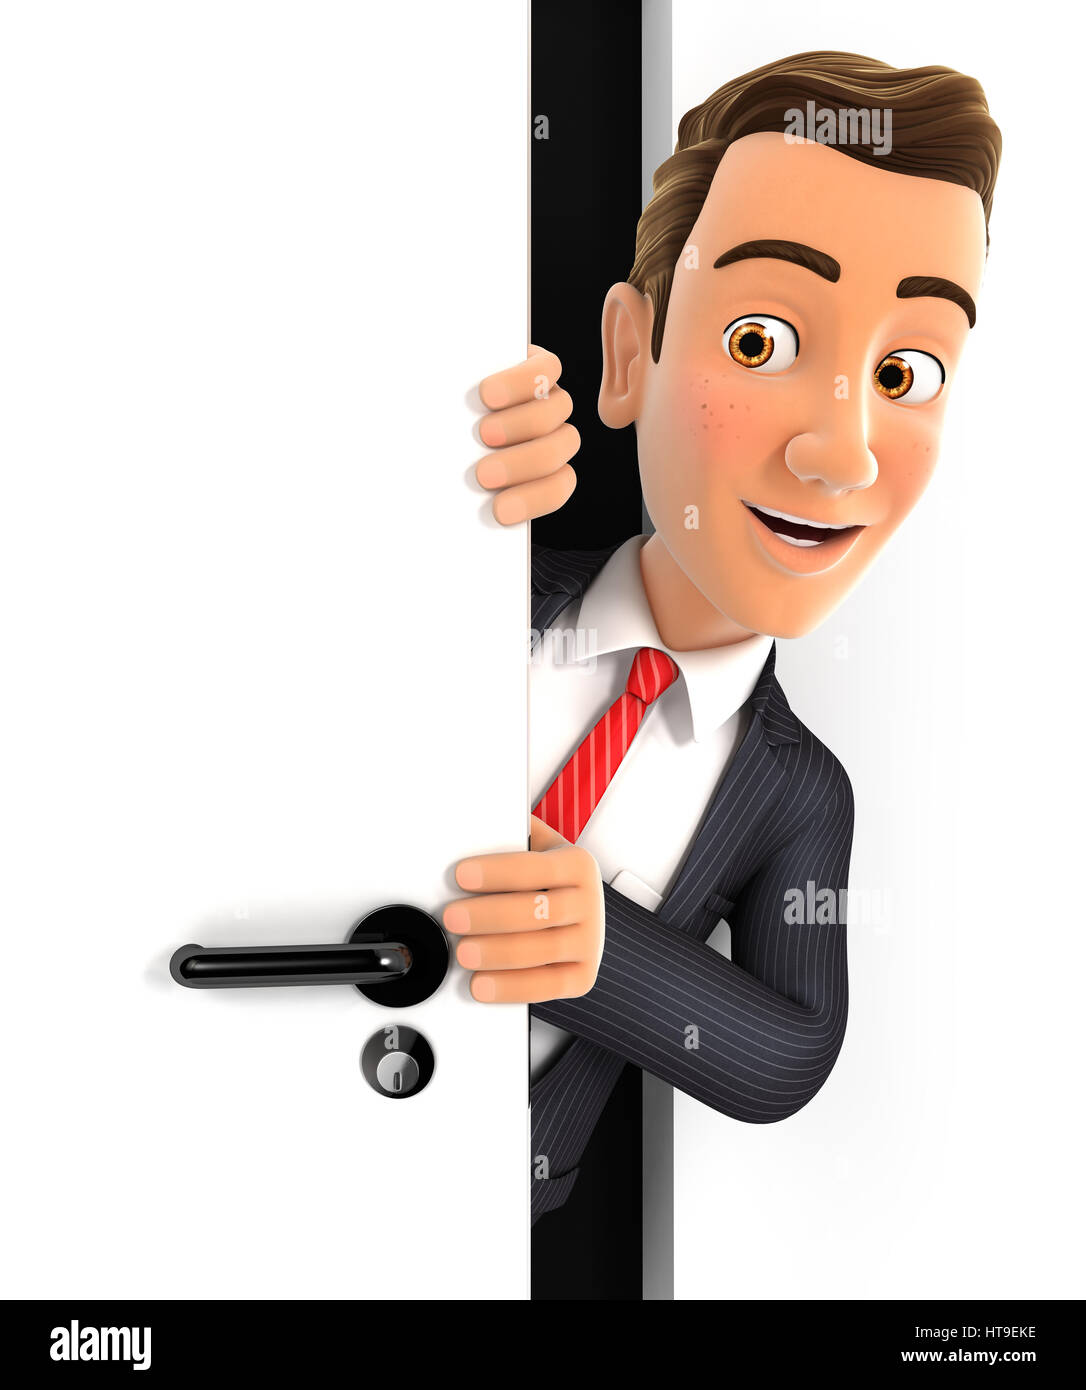 Businessman peeking 3d derrière une porte, illustration avec fond blanc isolé Banque D'Images